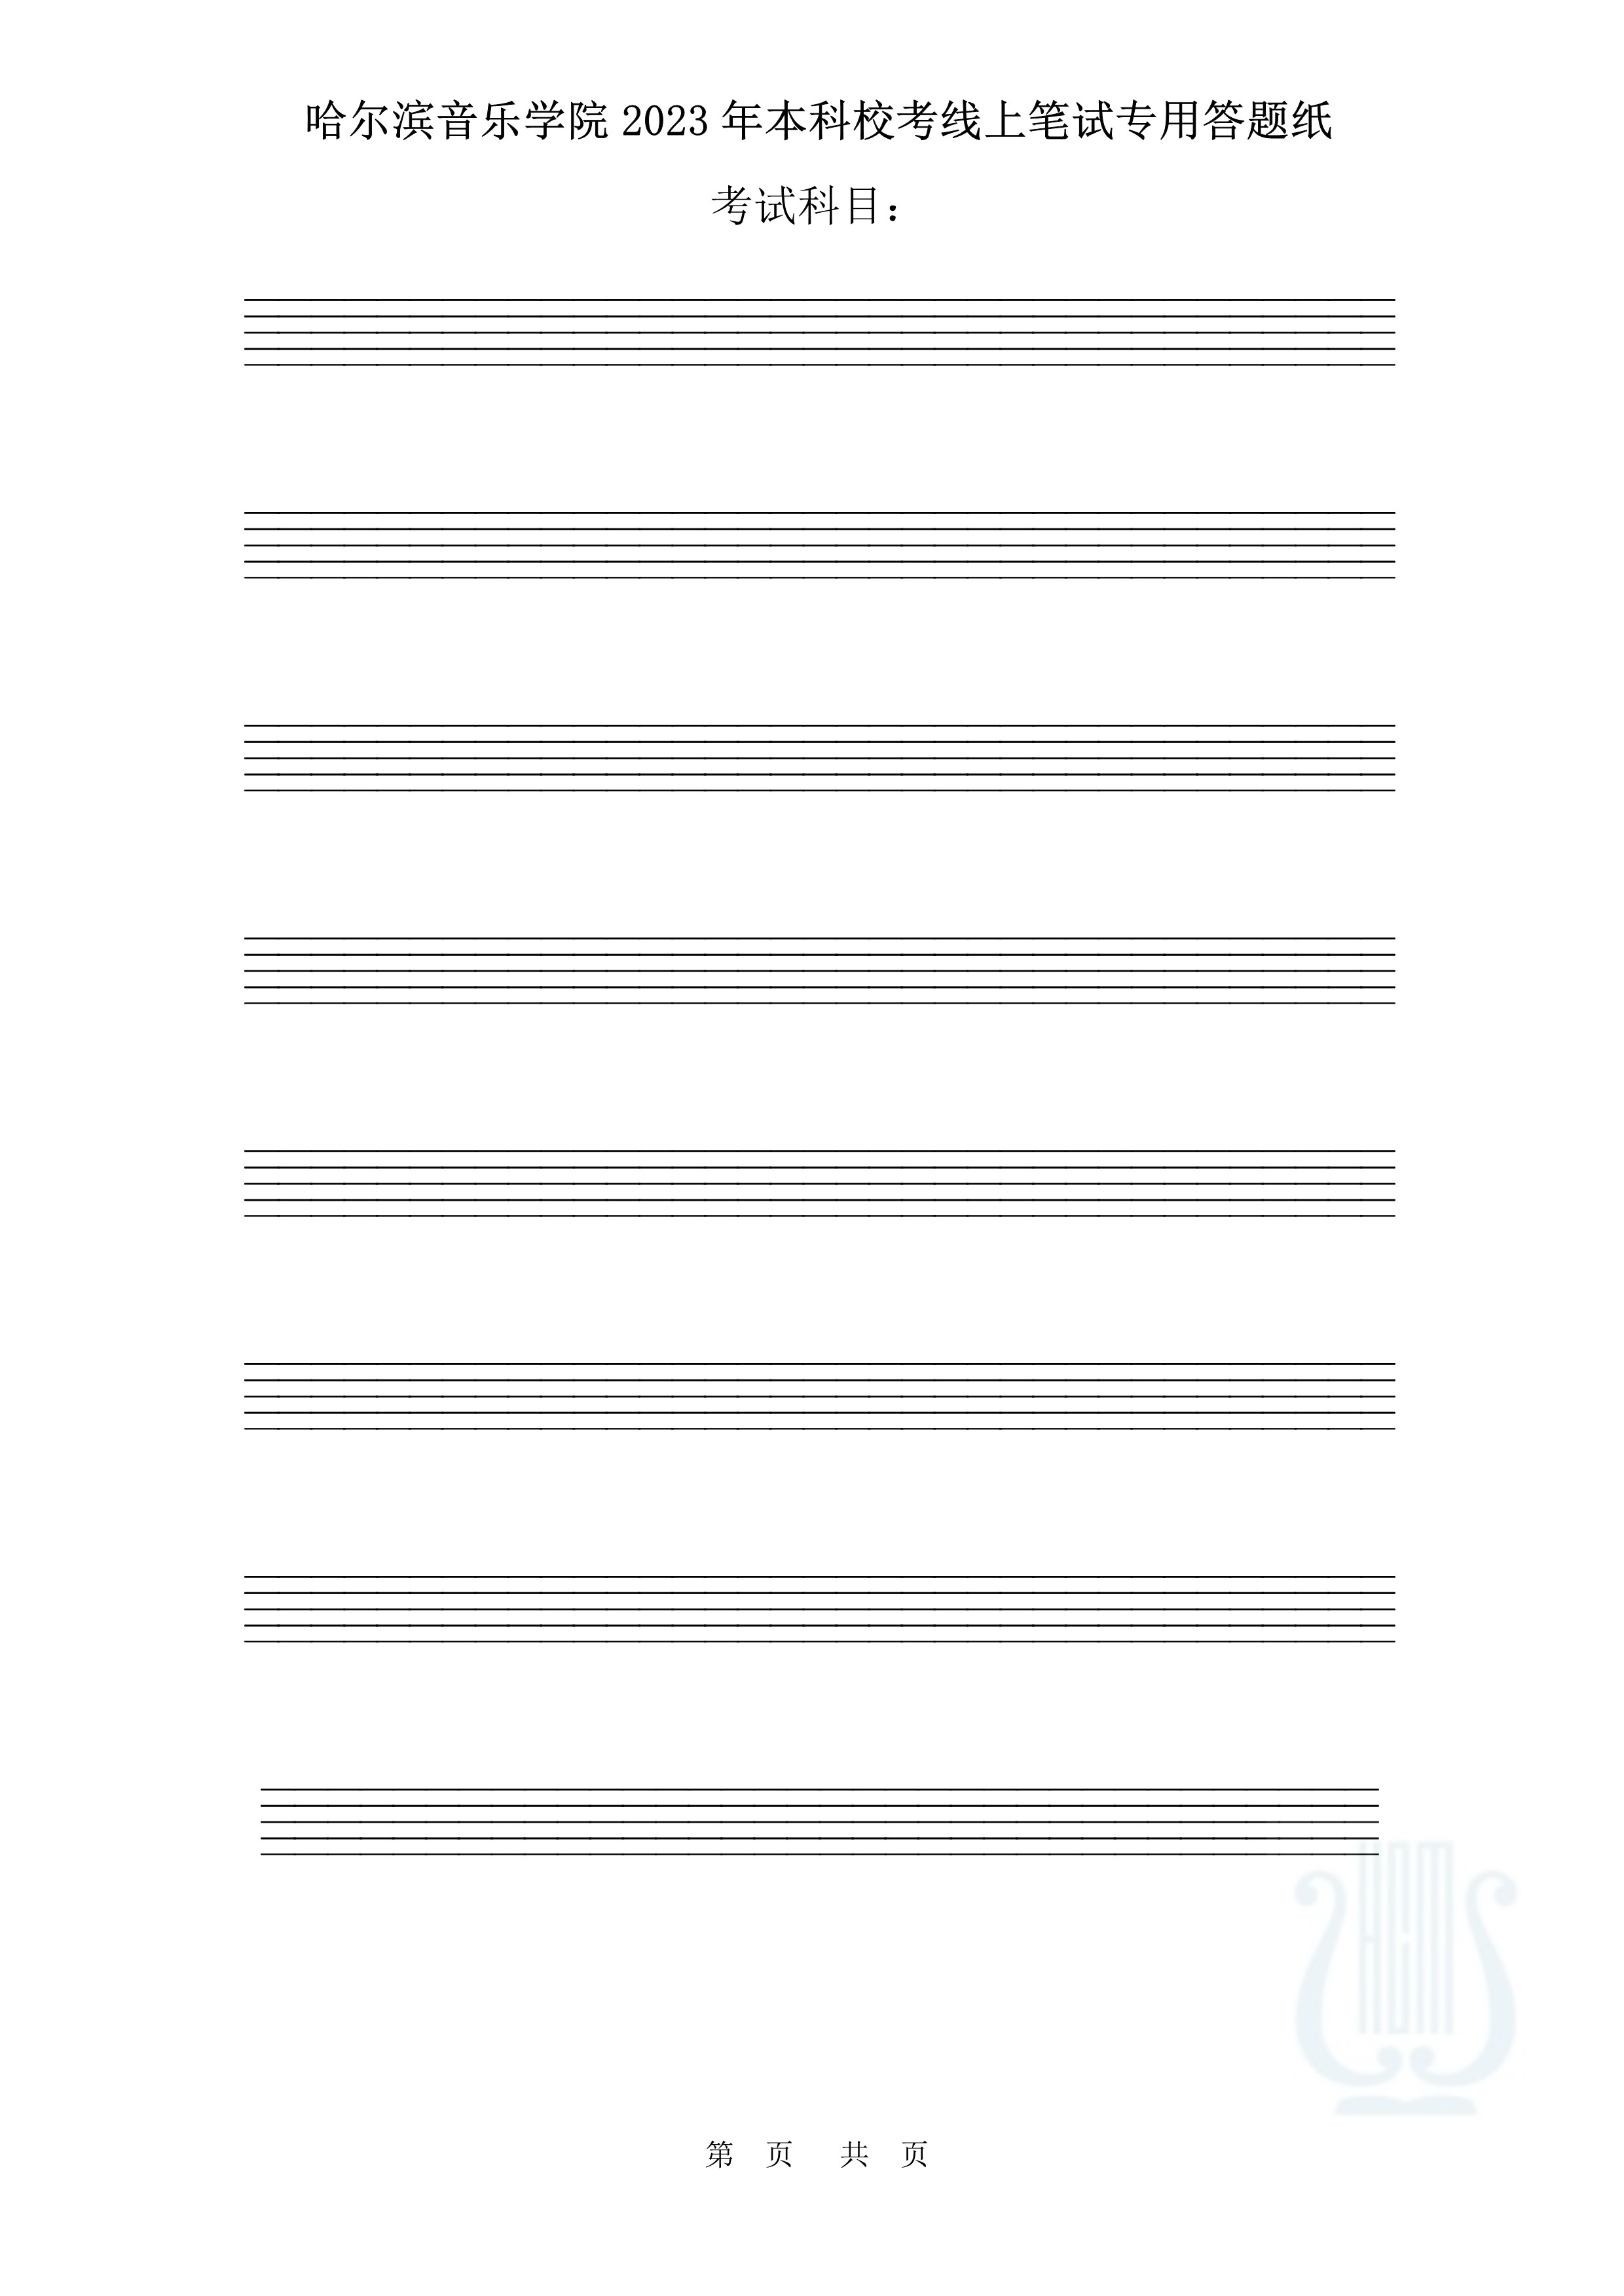 哈尔滨音乐学院2023年本科校考线上笔试答题纸（作曲与作曲技术理论）_3.jpg